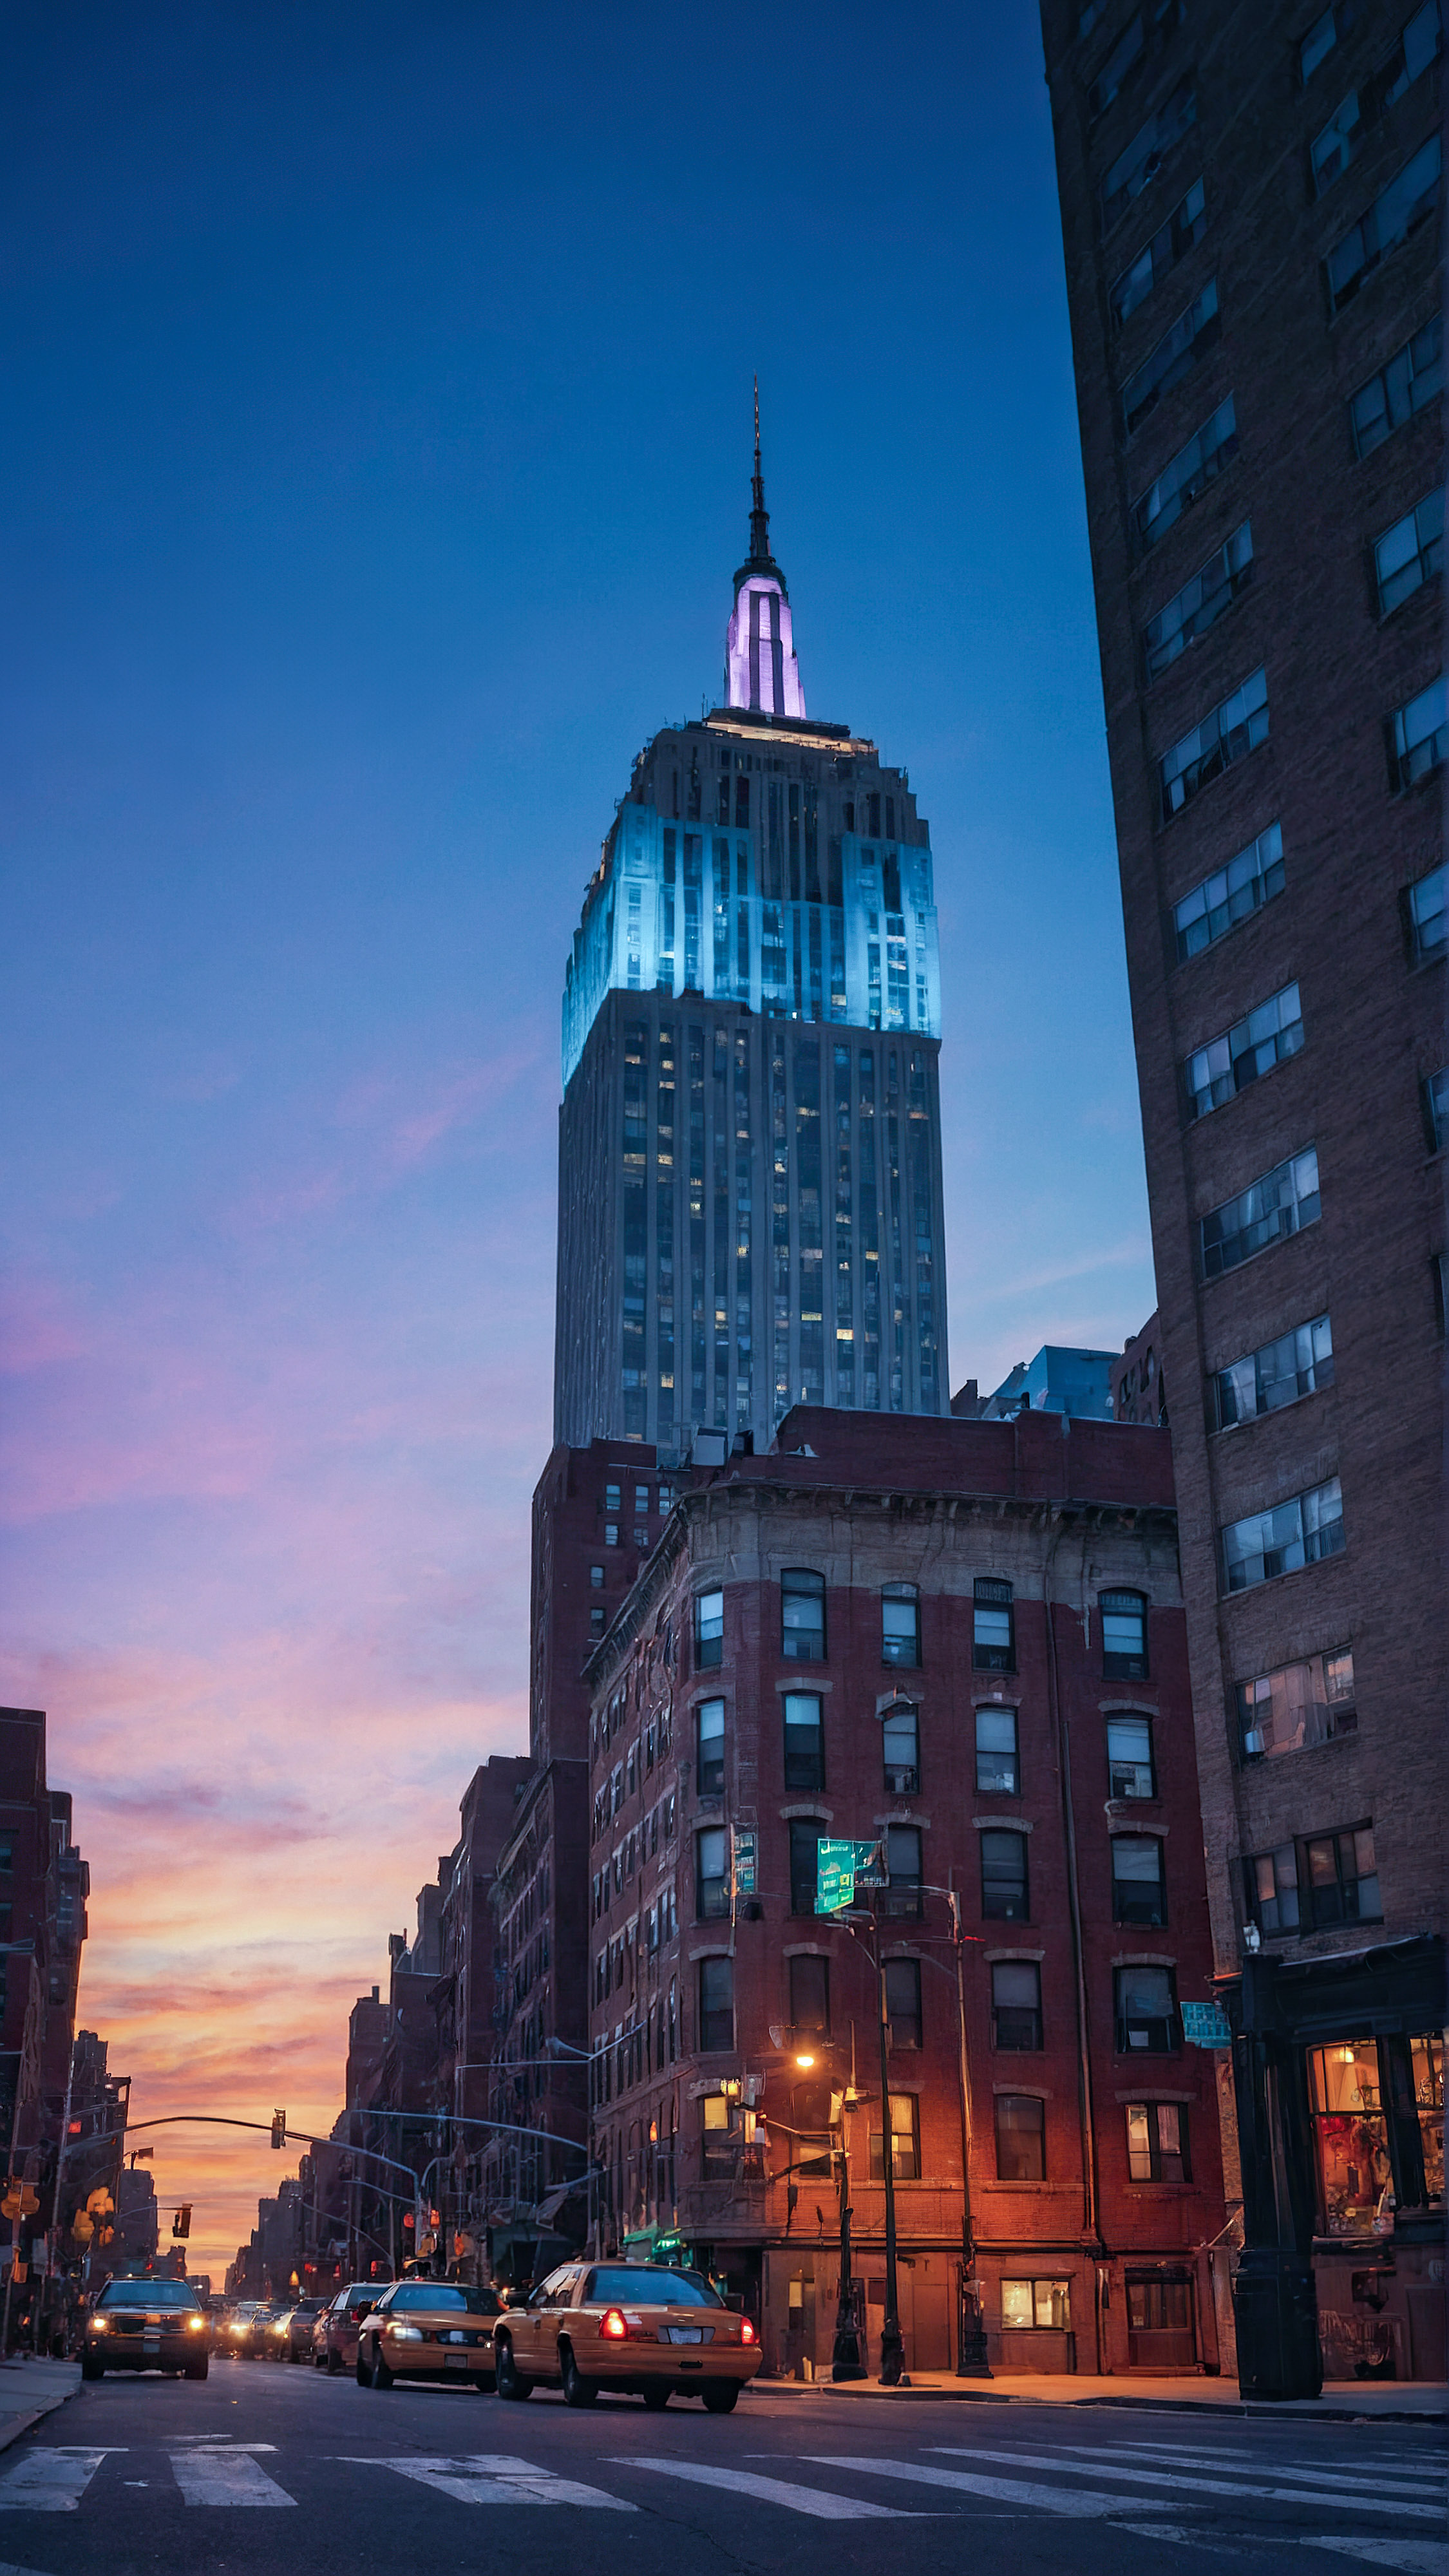 Transformez votre appareil avec notre beau fond d'écran esthétique 4K pour iPhone, présentant une représentation artistique et colorée d'un paysage urbain de New York au crépuscule avec une tour en arrière-plan. 